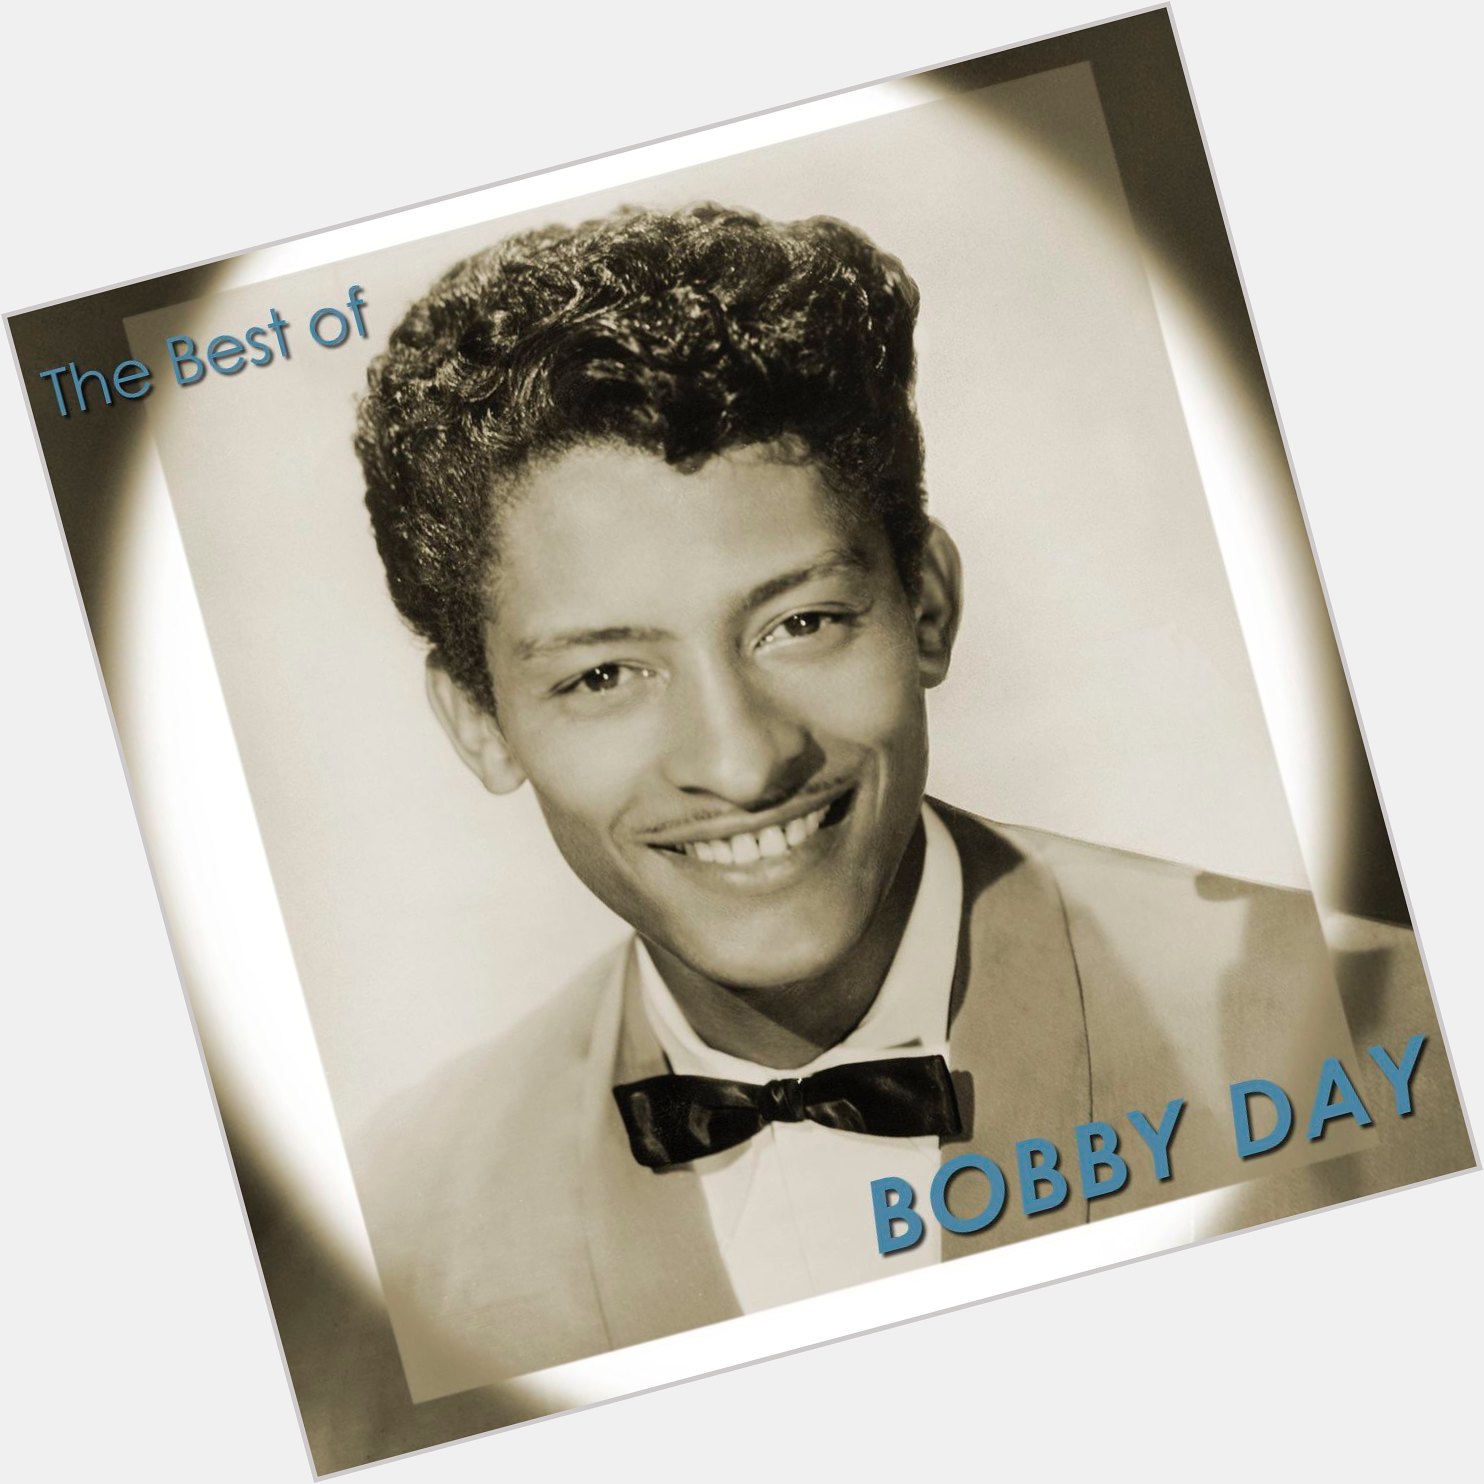 Bobby Day sexy 0.jpg